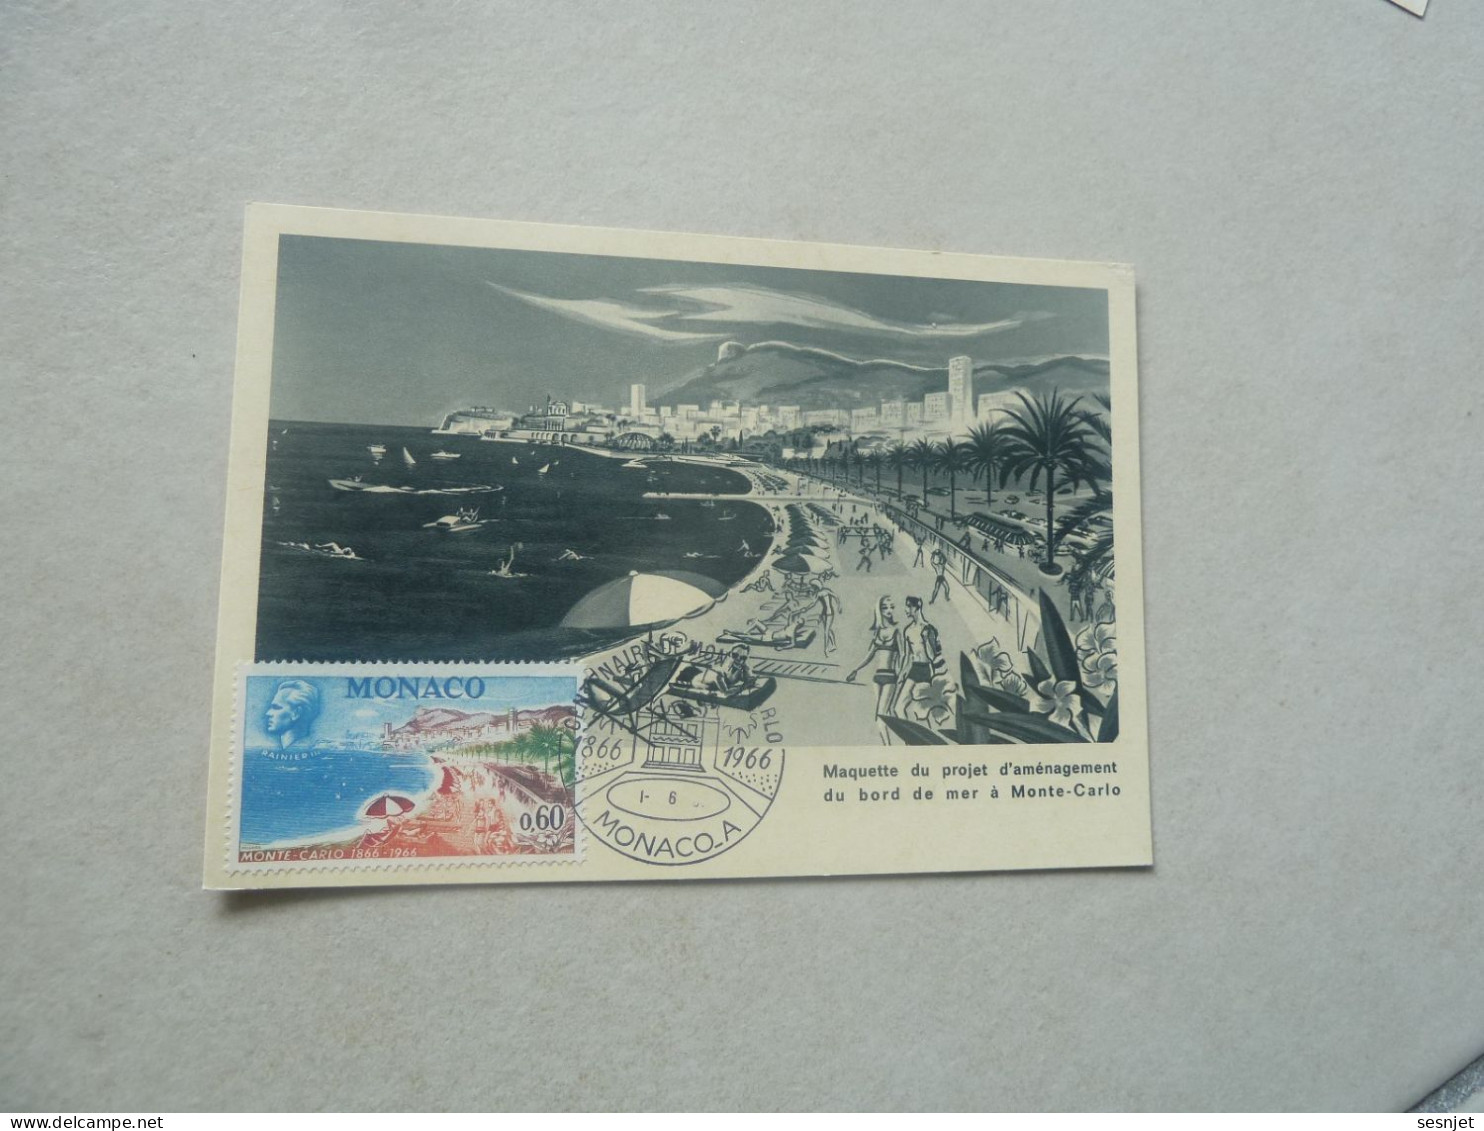 Monaco - Maquette Du Projet D'Aménagement - 0f.60 - Yt 694 - Carte Premier Jour D'Emission - Année 1966 - - Cartas Máxima